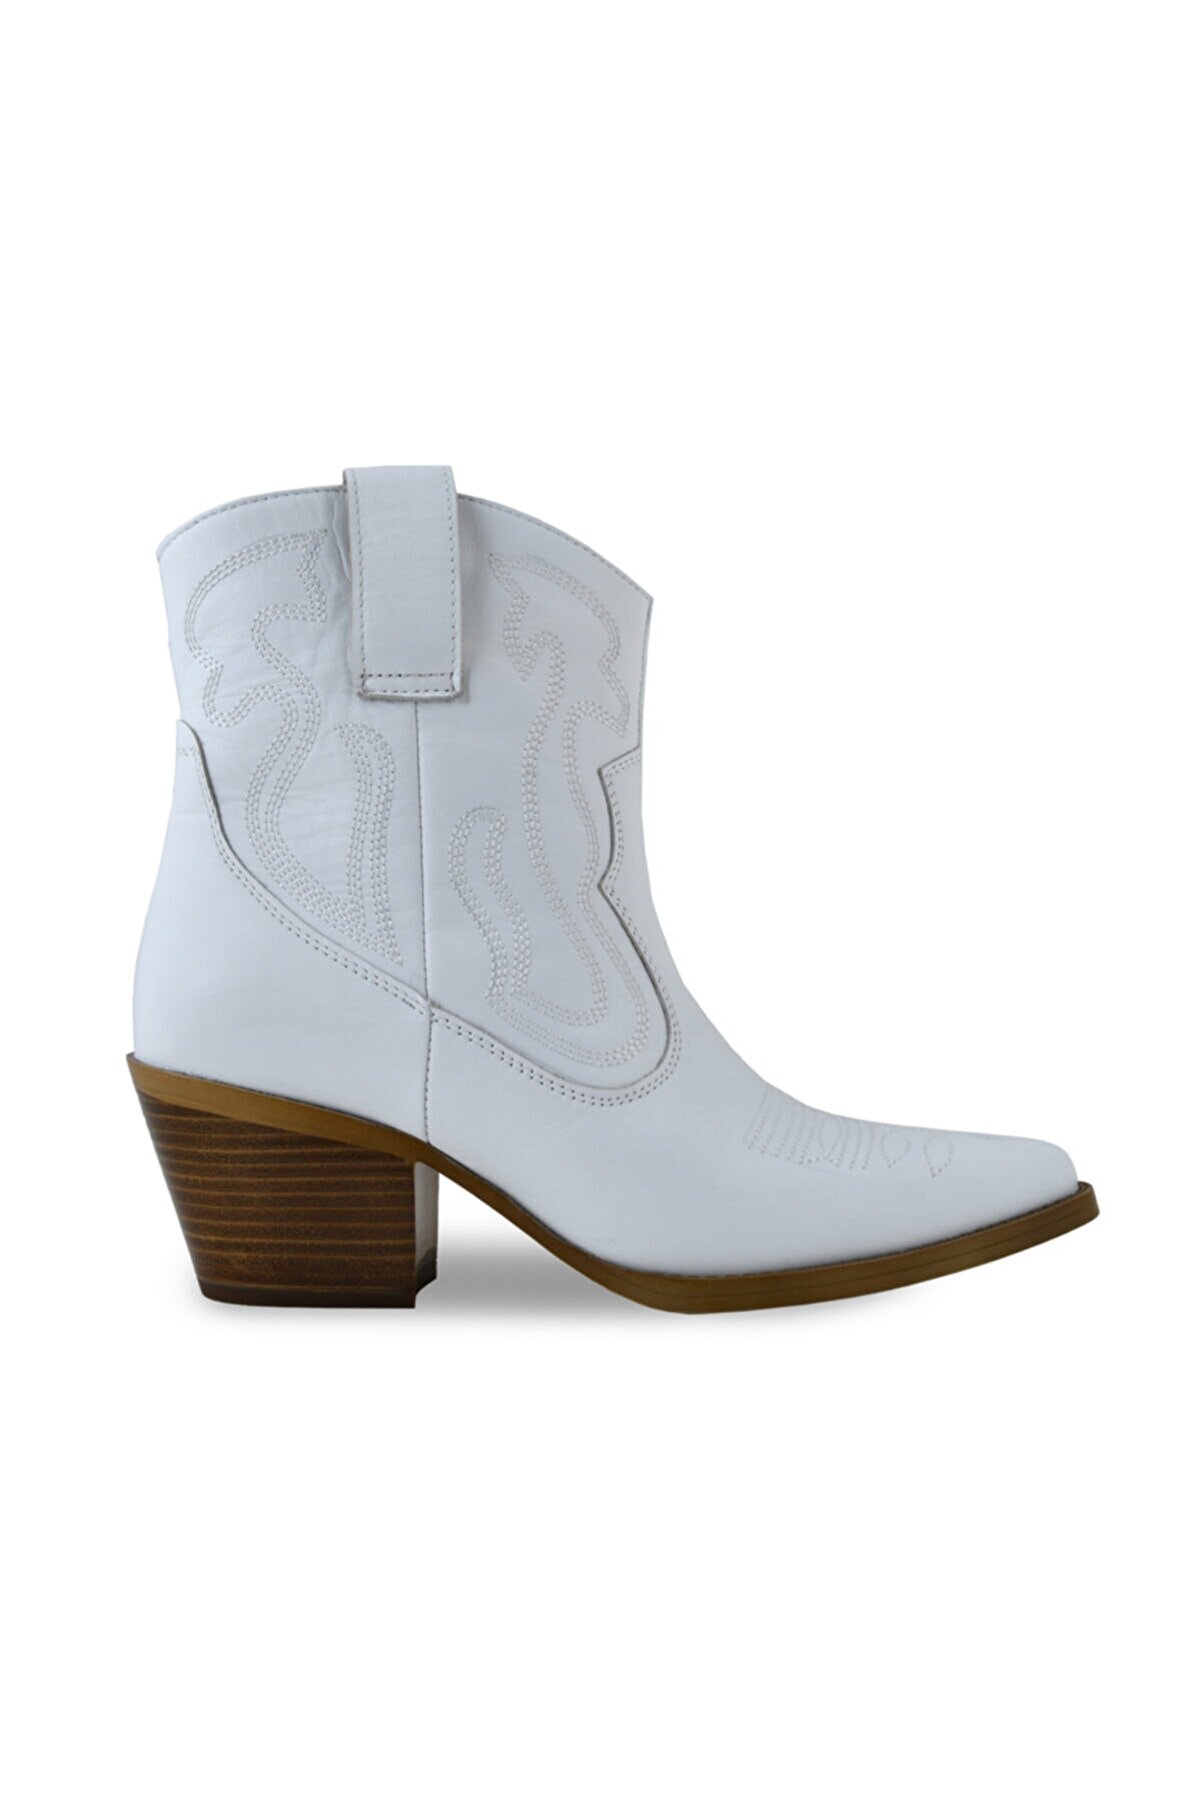 Sevim Ayakkabı Kadın Günlük Beyaz Renk Hakiki Deri Western Bot